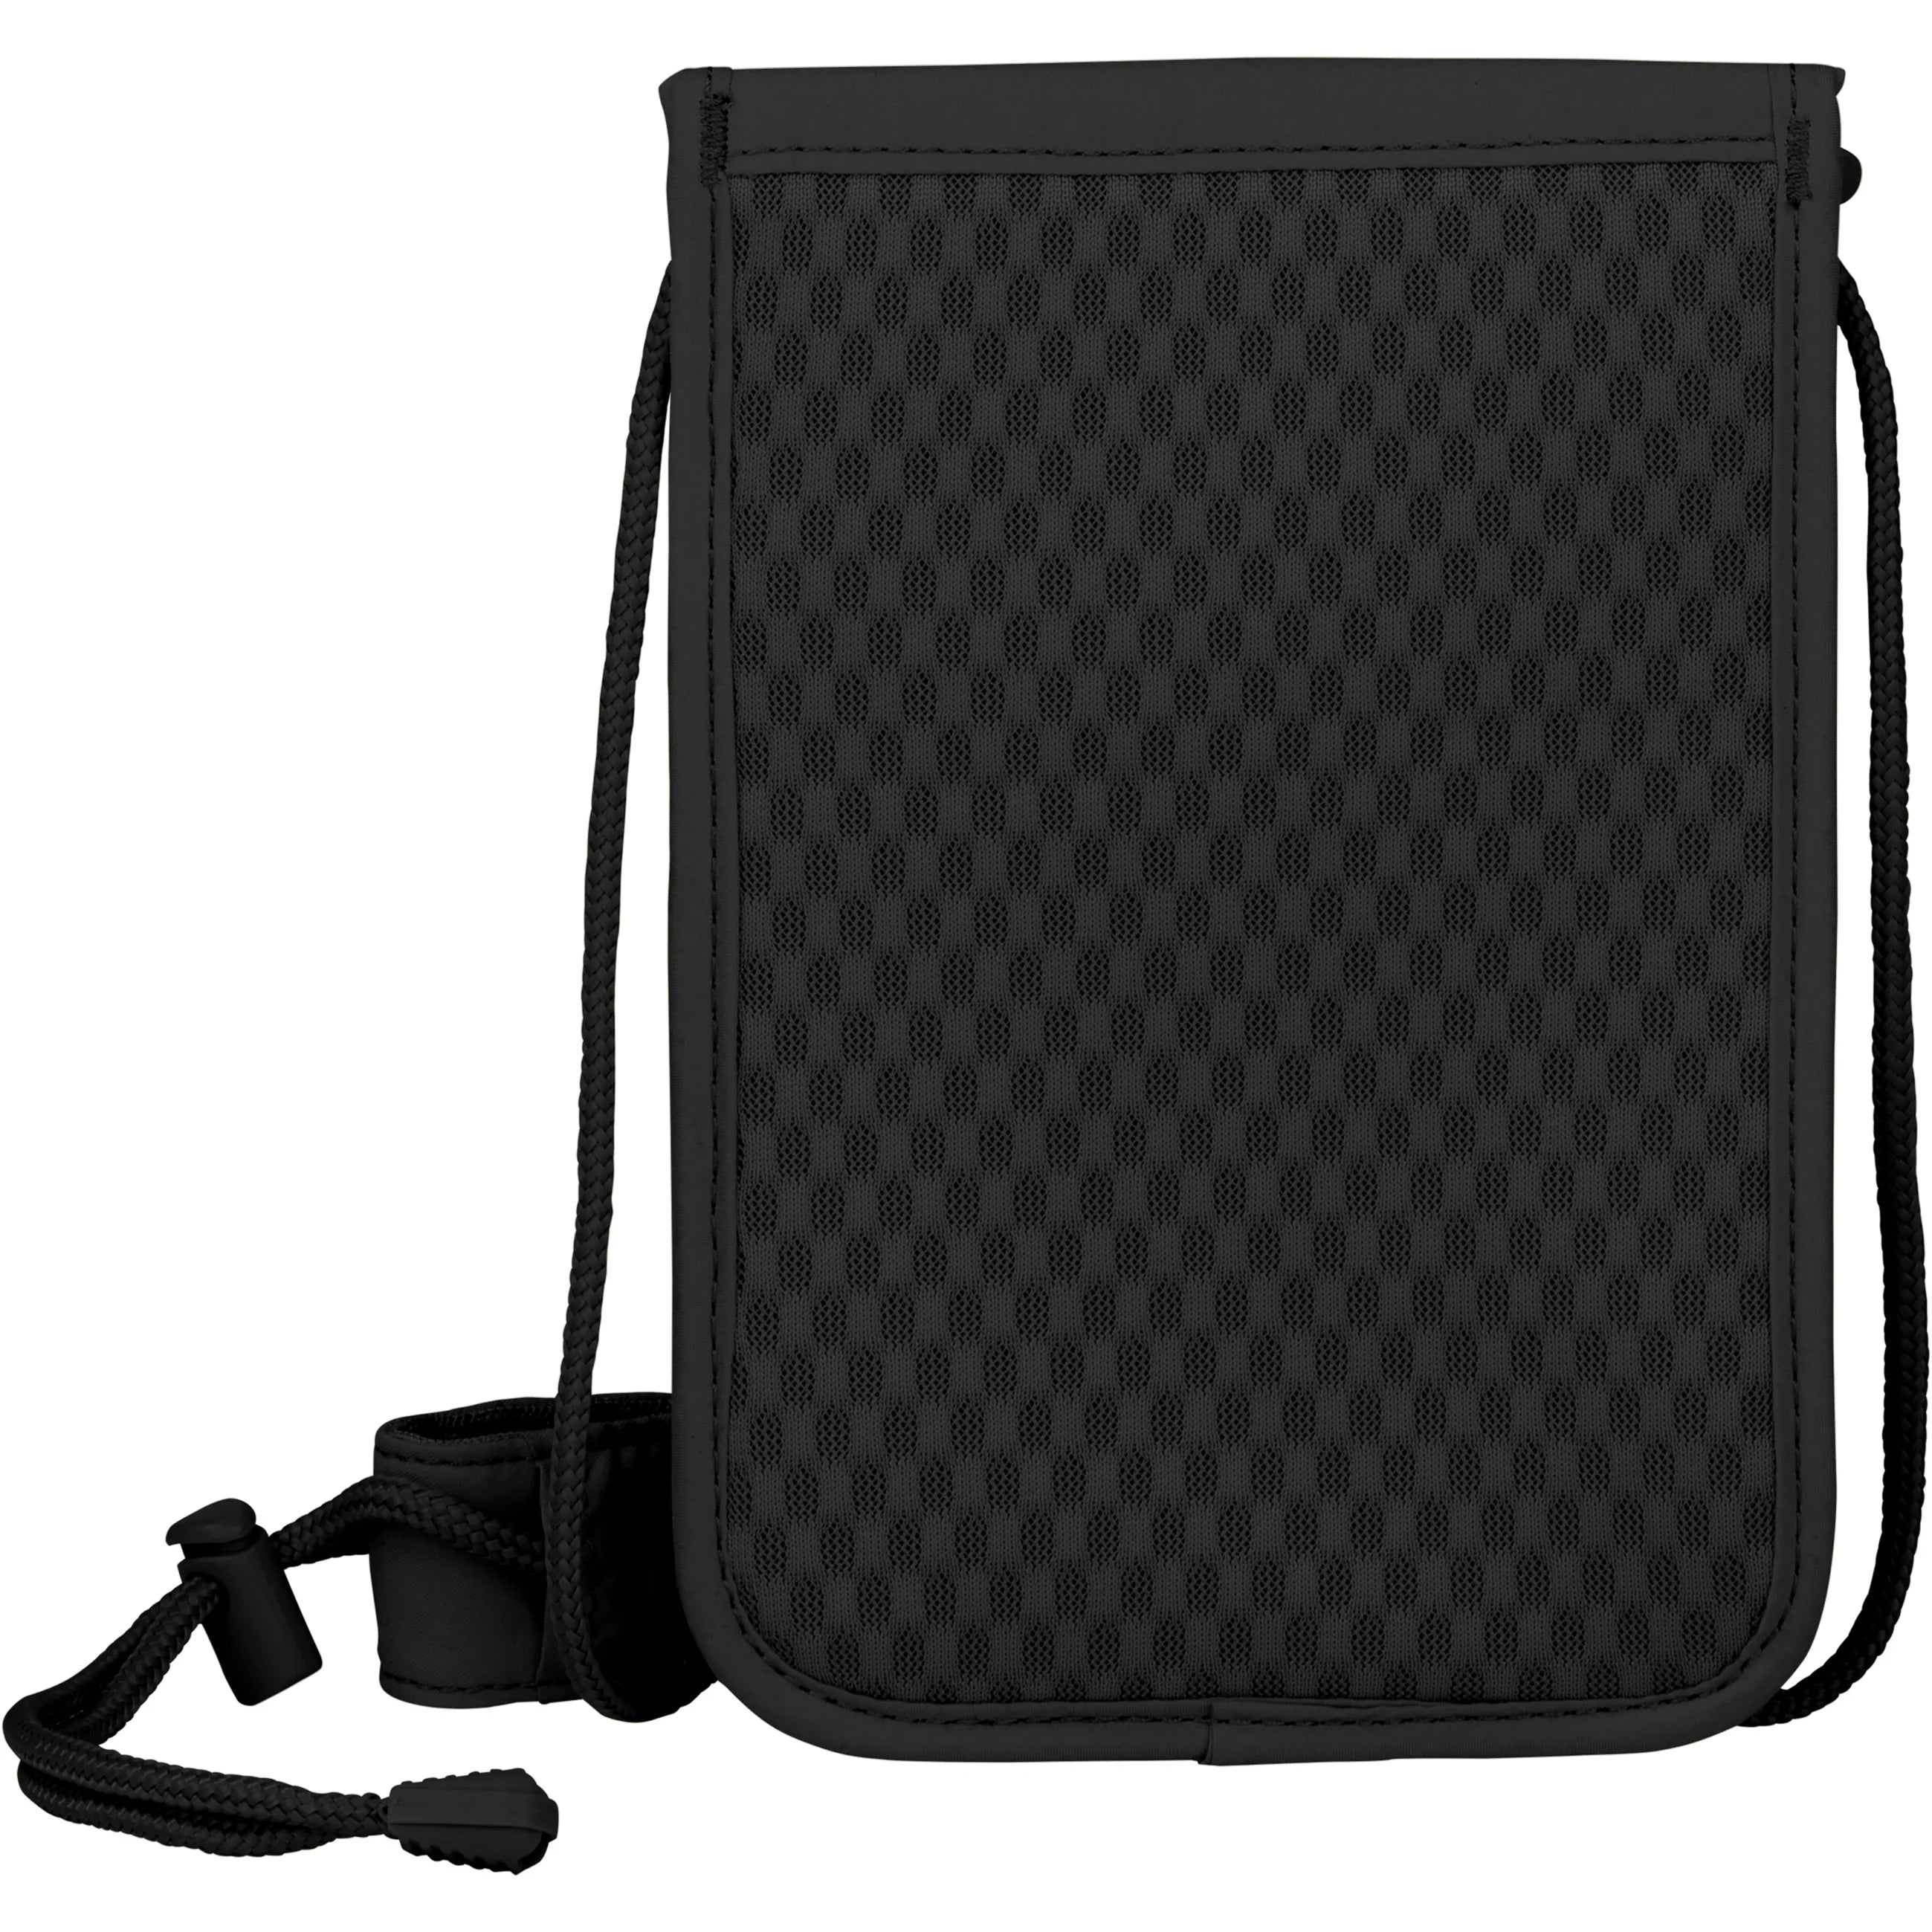 Victorinox Travel Accessories 5.0 Deluxe Brustbeutel mit RFID Schutz 21 cm - Black